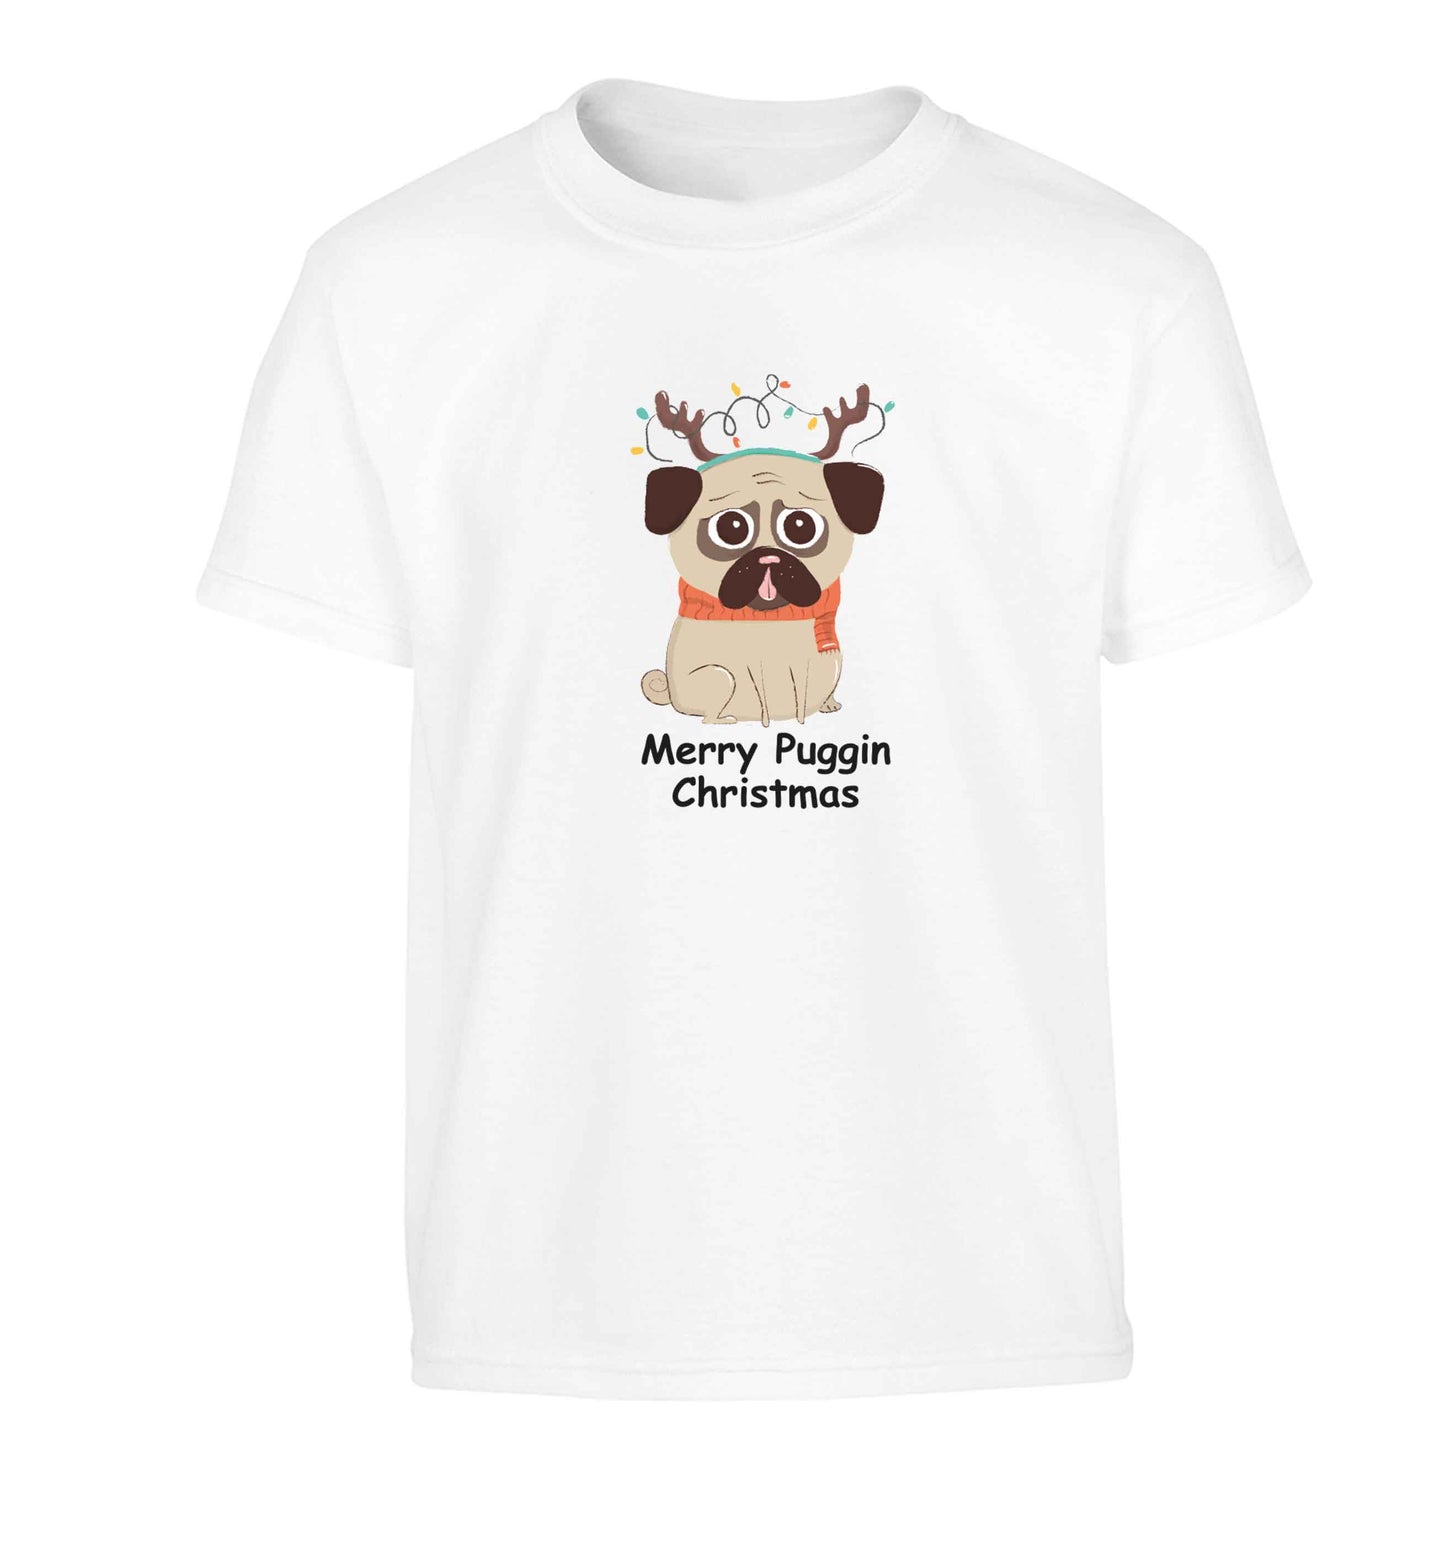 Merry puggin' Chirstmas Children's white Tshirt 12-13 Years